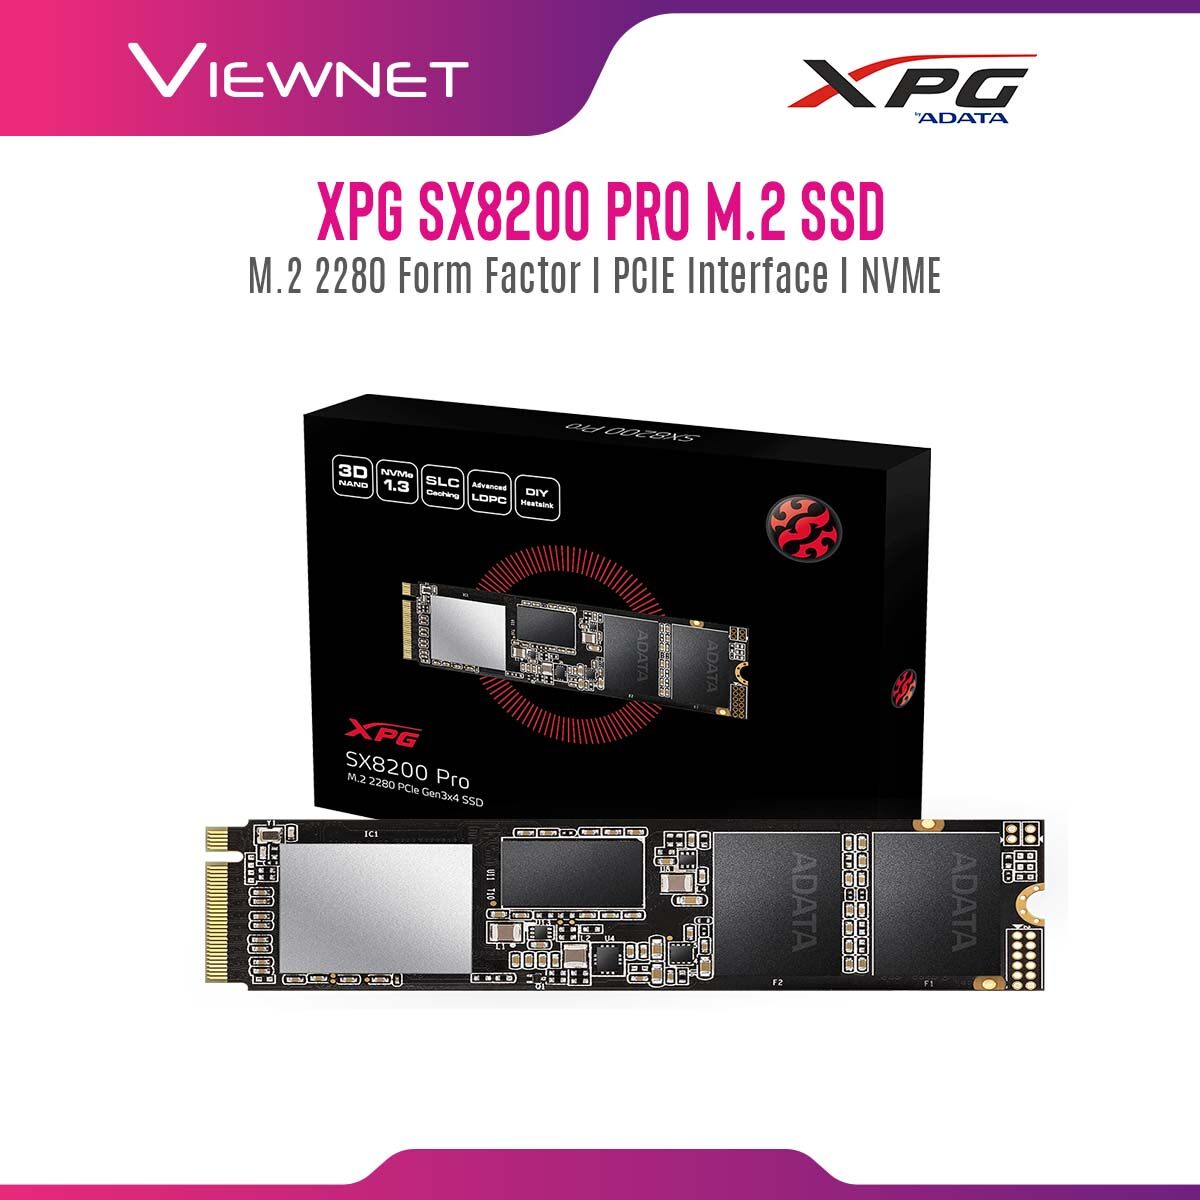 Adata XPG SX8200 PRO M.2 PCIE NVME GEN3 2280 Solid State Drive 256GB/512GB/1TB/2TB